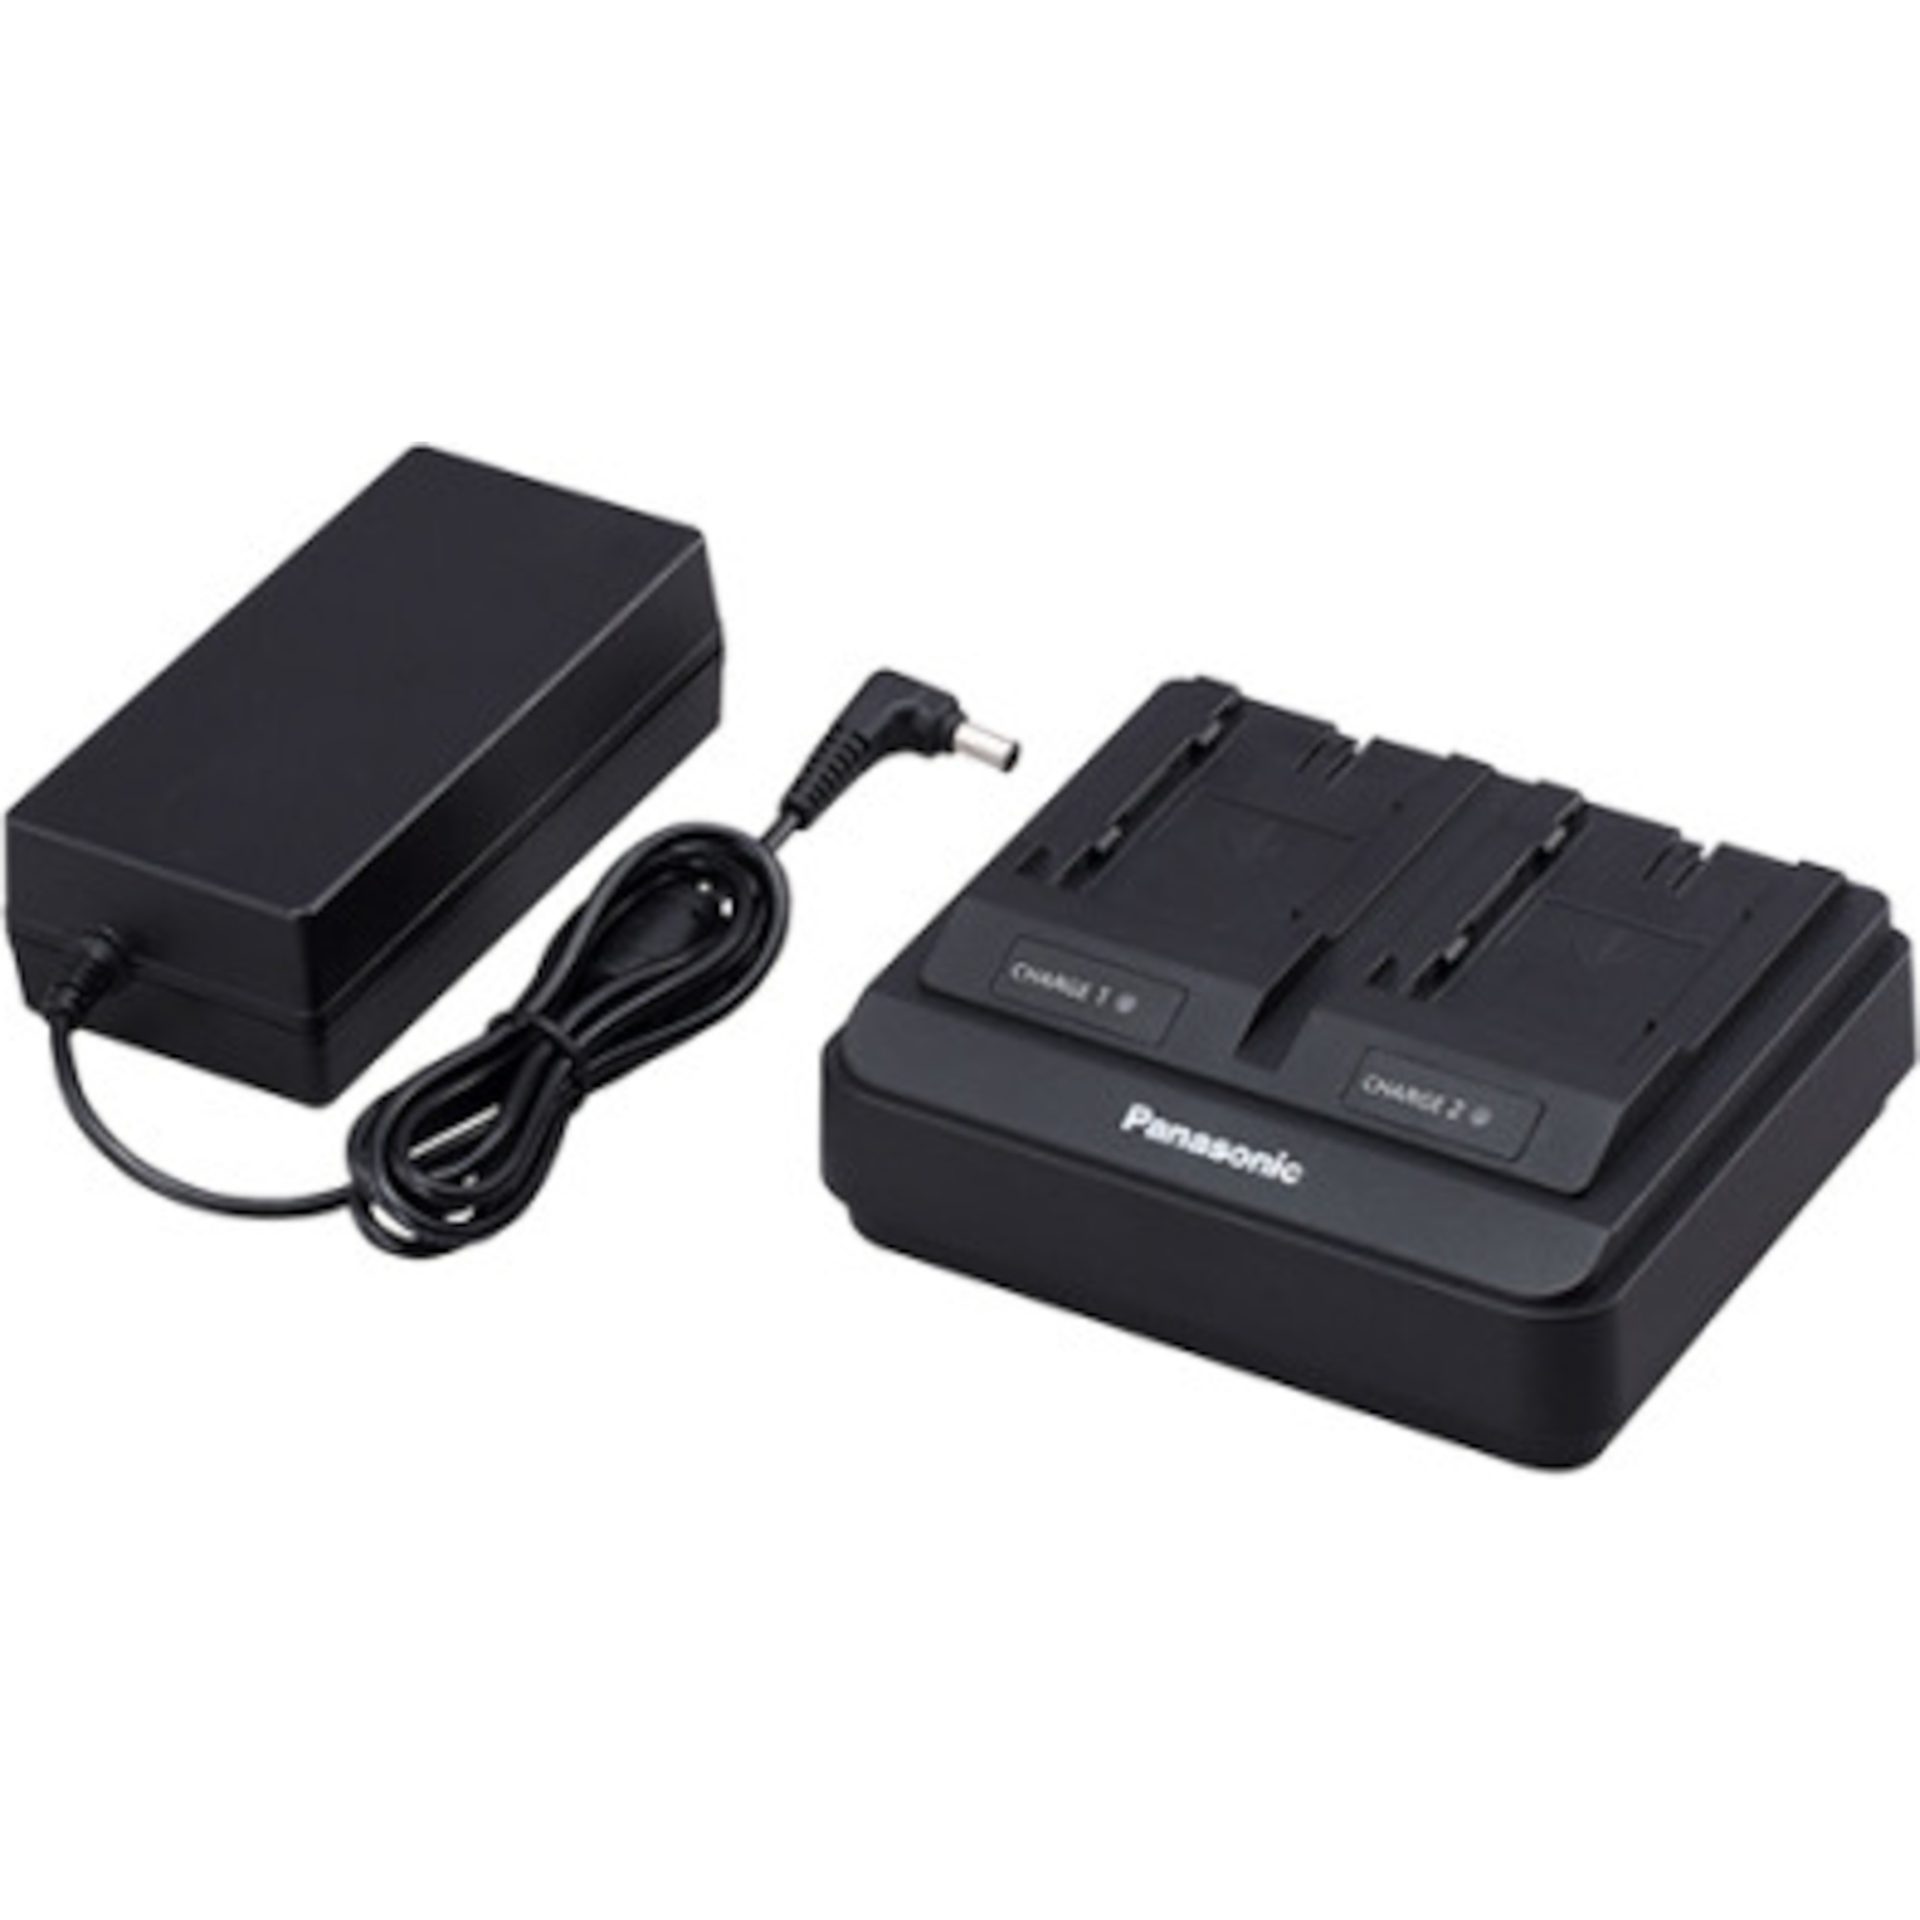 Panasonic AG-BRD50 duální nabíječka baterií (pro baterie řady AG-VBR, VW-VBD55 a VW-VBG6, funkce rychlého nabíjení), černá